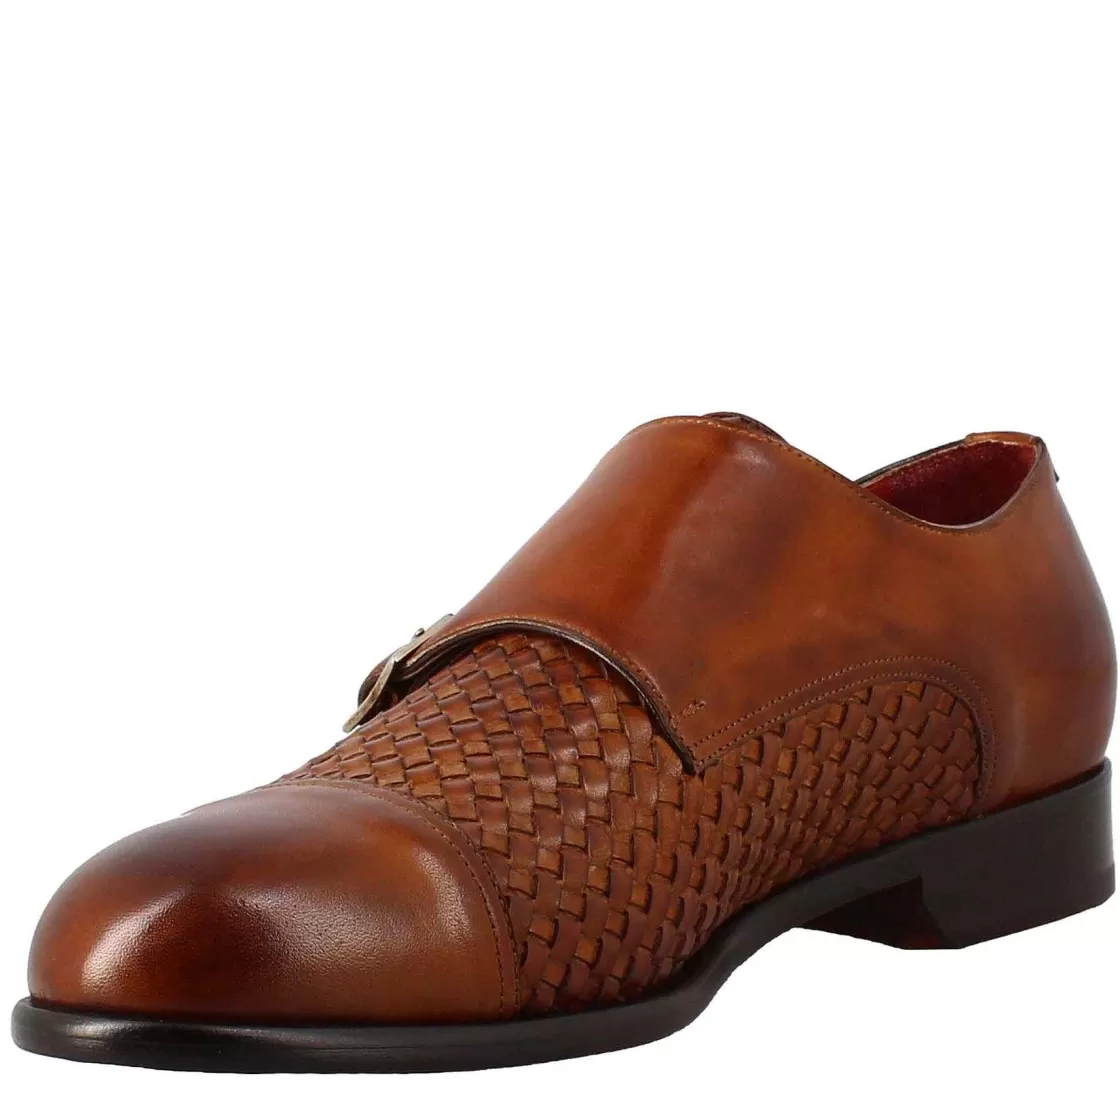 Leonardo Men'S Double Buckle Shoe In Sienna Brown Woven Leather Fashion